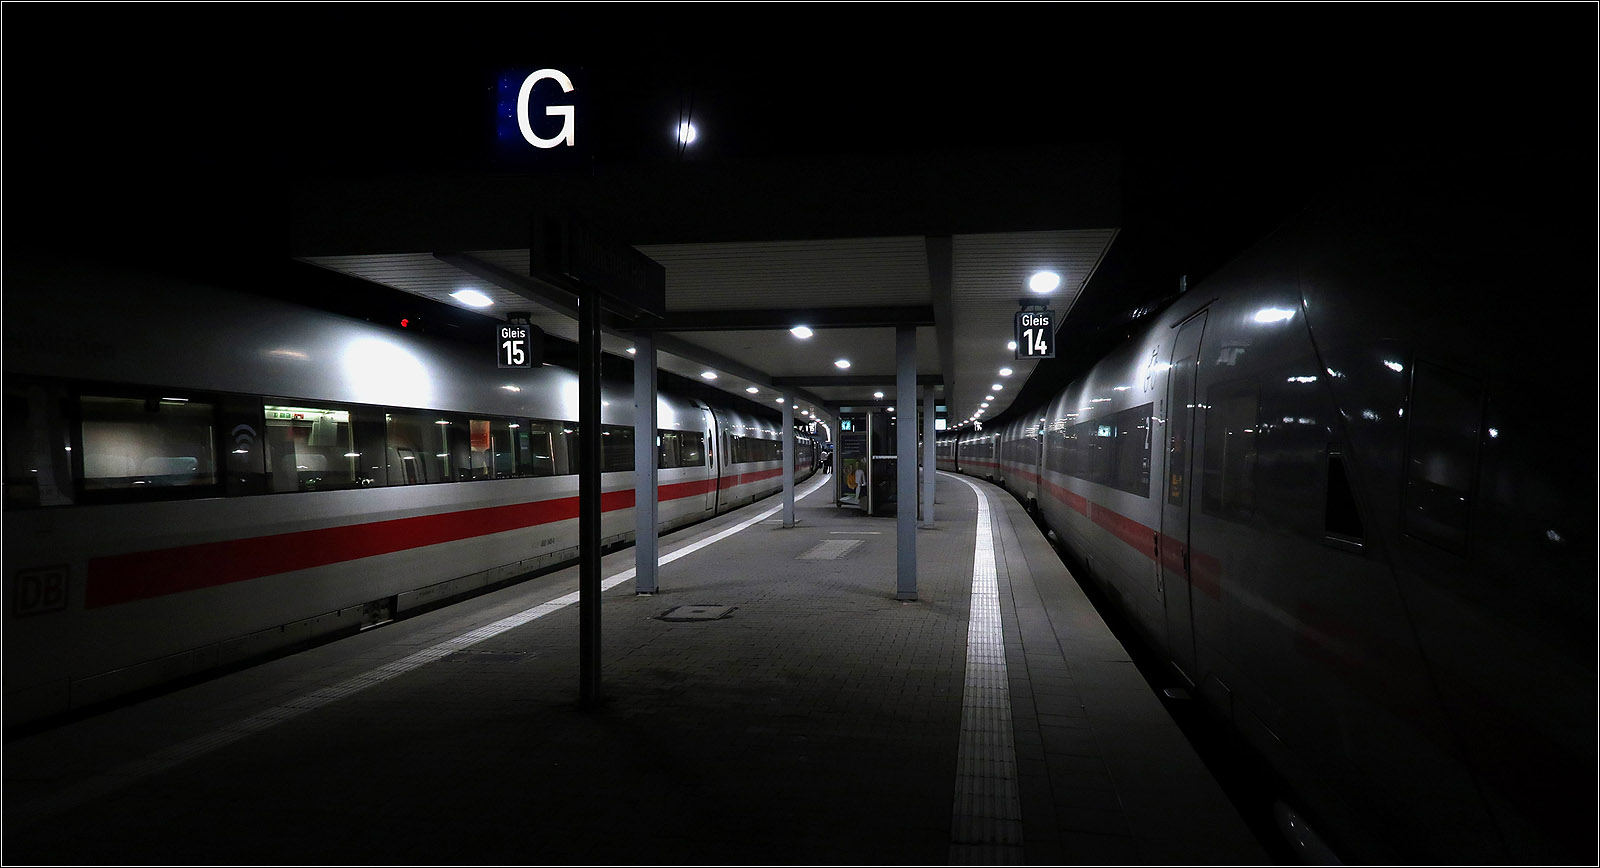 Licht unter dem Bahnsteigdach -

Während die beiden ICE-Züge im Bereich des Bahnsteigdaches von der Beleuchtung angestrahlt werden, verschwinden die Züge außerhalb des Daches in der Dunkelheit der Nacht.
München Hauptbahnhof an den Gleisen 14 und 15, links ein ICE 1, rechts ein ICE 4.

07.11.2022 (M) 

